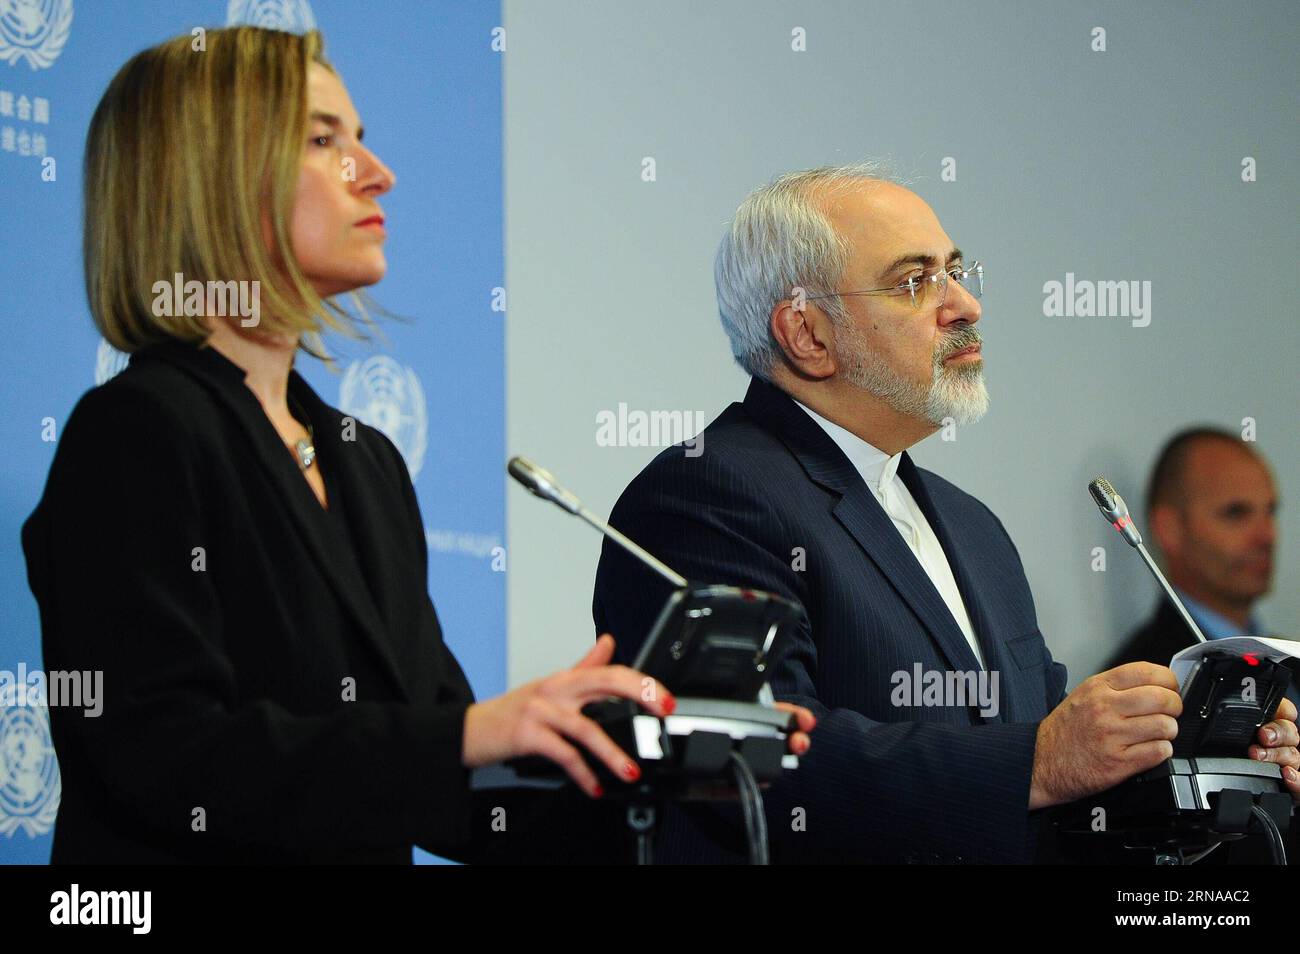 Il ministro degli Esteri iraniano Mohammad Javad Zarif(R) e il capo della politica estera dell'UE Federica Mogherini partecipano a una conferenza stampa a Vienna, in Austria, il 16 gennaio 2016. Sabato sera l'Unione europea (UE) e l'Iran hanno annunciato congiuntamente il giorno di attuazione dello storico accordo nucleare dopo che l'Agenzia internazionale per l'energia atomica (AIEA) ha confermato che tutte le fasi di preparazione richieste sono state completate da Teheran. L'UE ha revocato le sue sanzioni economiche contro l'Iran dopo l'annuncio dell'AIEA. ) AUSTRIA-VIENNA-UE-IRAN-EUCLEAR DEAL IMPLEMENTATION-SANCTIONS-REMOVED QianxYi PUBLICATIONxNOTxINxCHN Iranian Foreig Foto Stock